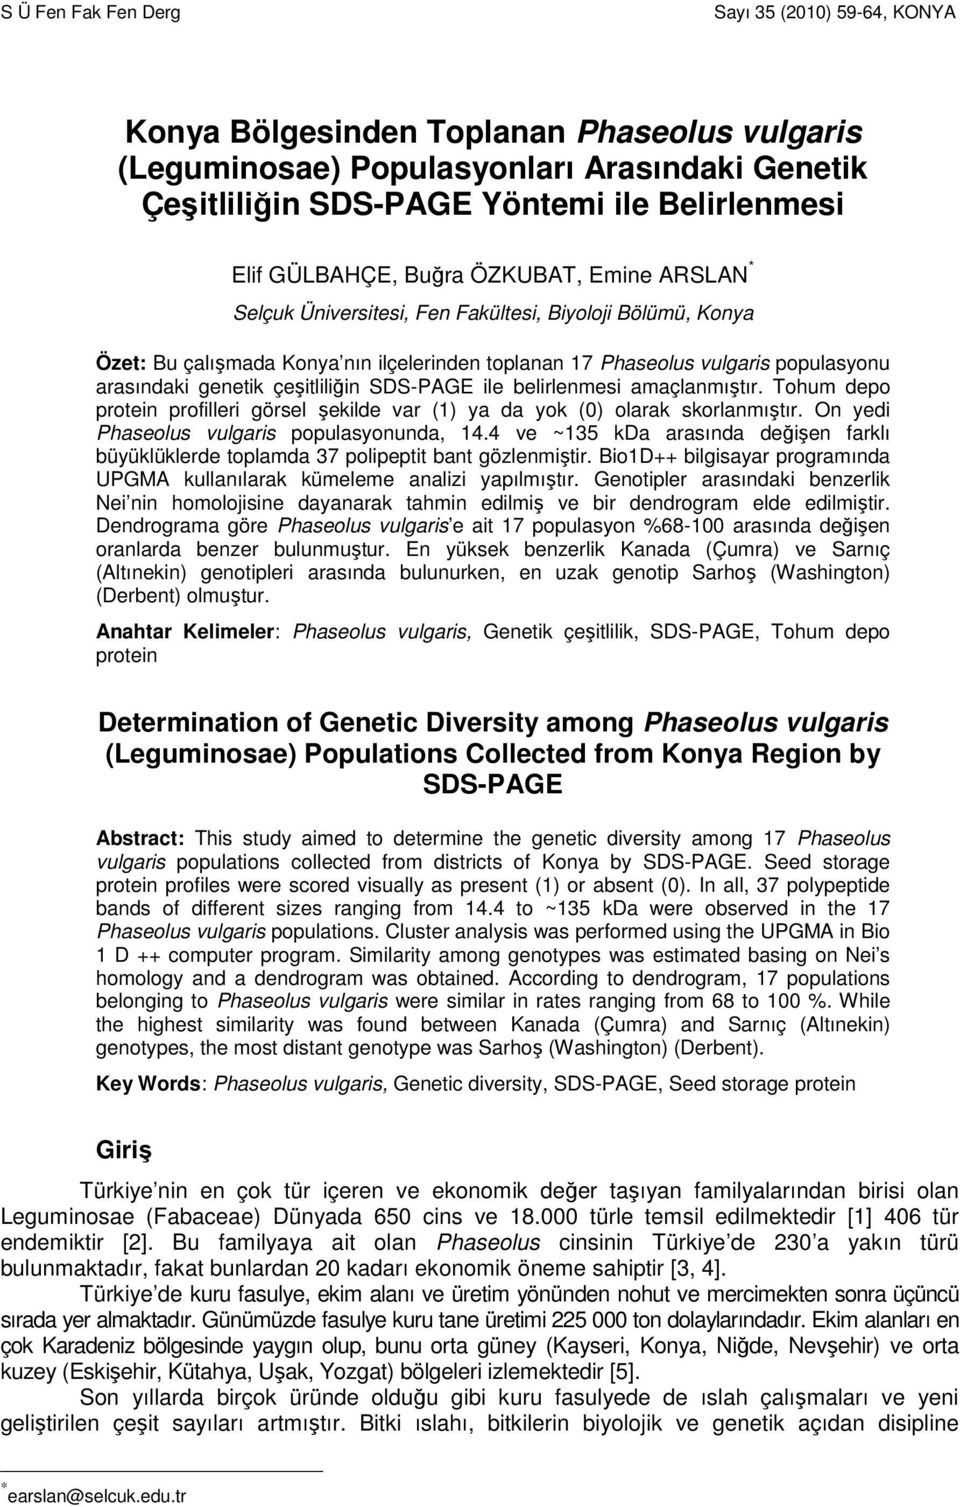 genetik çeşitliliğin SDS-PAGE ile belirlenmesi amaçlanmıştır. Tohum depo protein profilleri görsel şekilde var (1) ya da yok (0) olarak skorlanmıştır. On yedi Phaseolus vulgaris populasyonunda, 14.